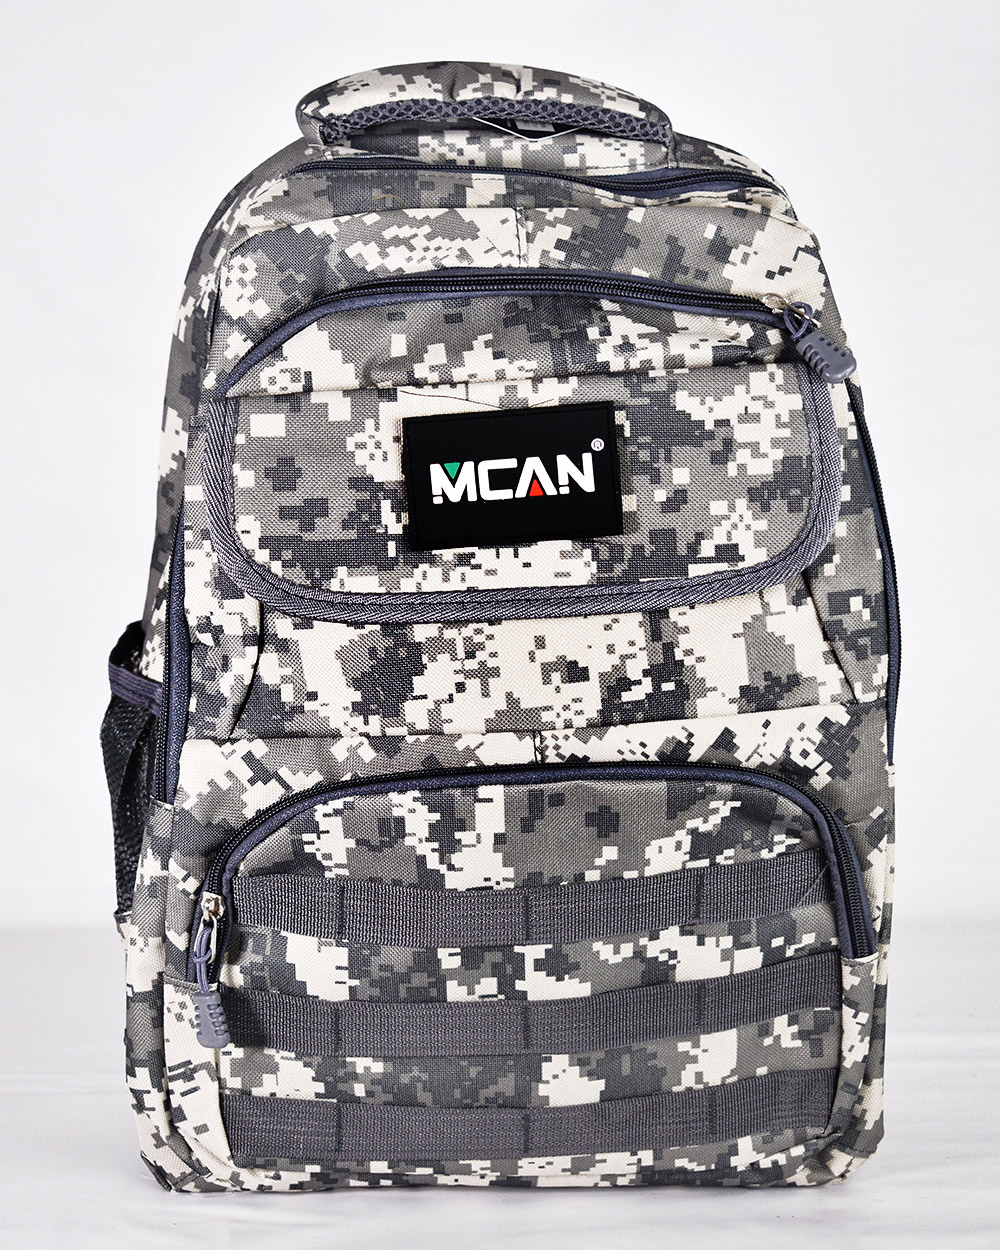 MCAN Ανδρική στρατιωτική τσάντα πλάτης γκρι παραλλαγής 45cmx30xm